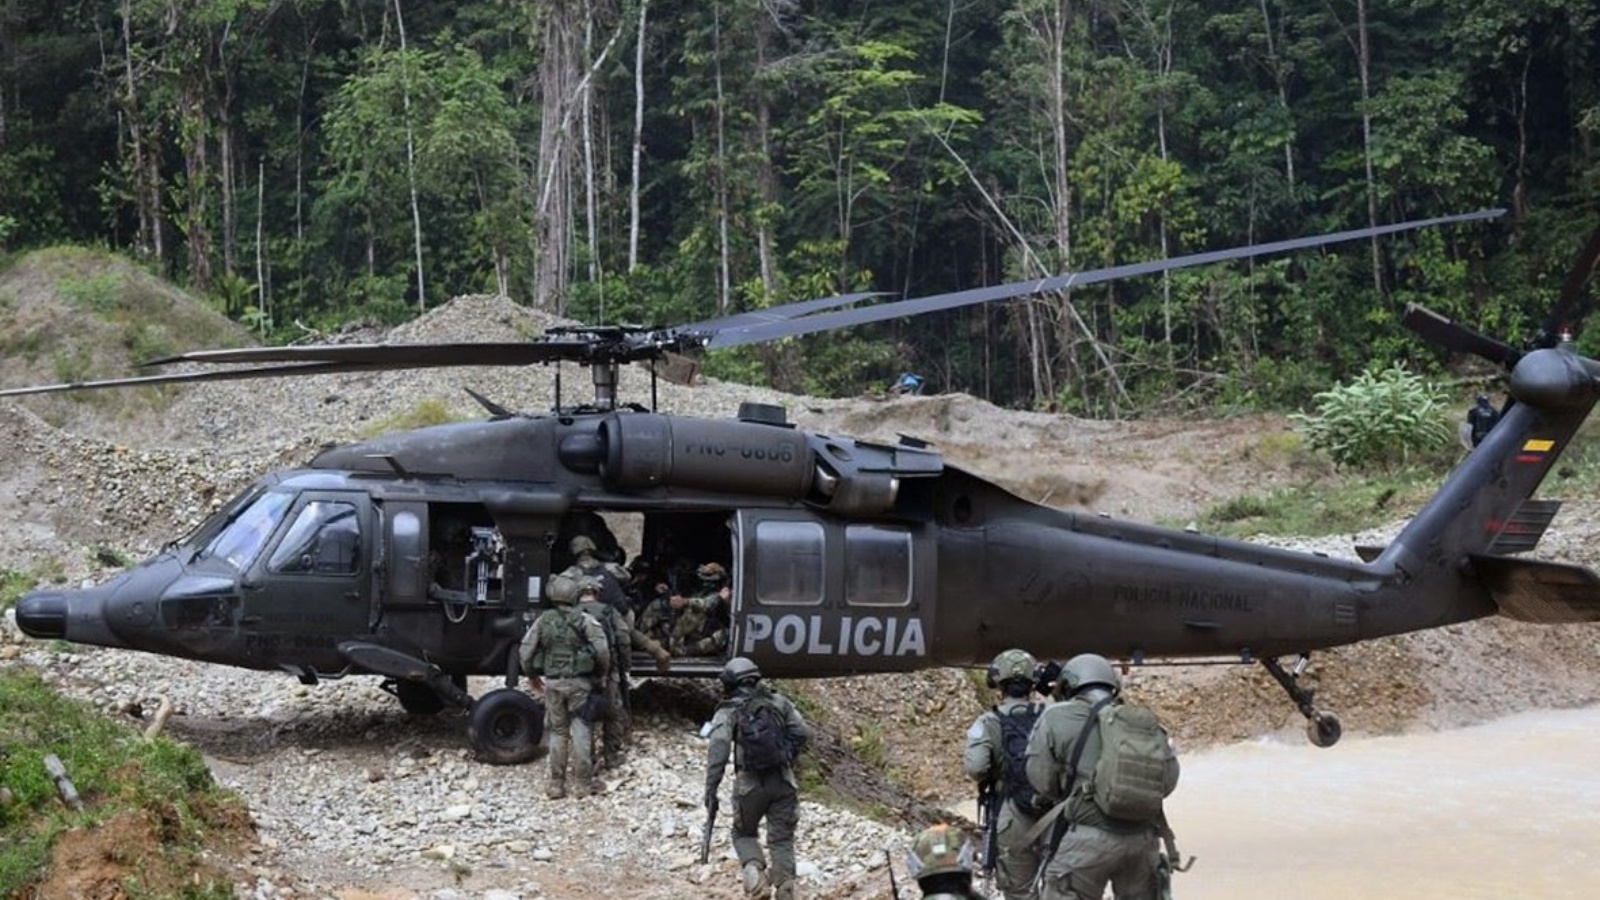 جنود وشرطيون كولومبيون يستقلون طائرة هليكوبتر بعد تدمير آلات ثقيلة في مكان تعدين غير قانوني للذهب، في تريانغولو دي تيليمبي بكولومبيا 25 يناير 2023